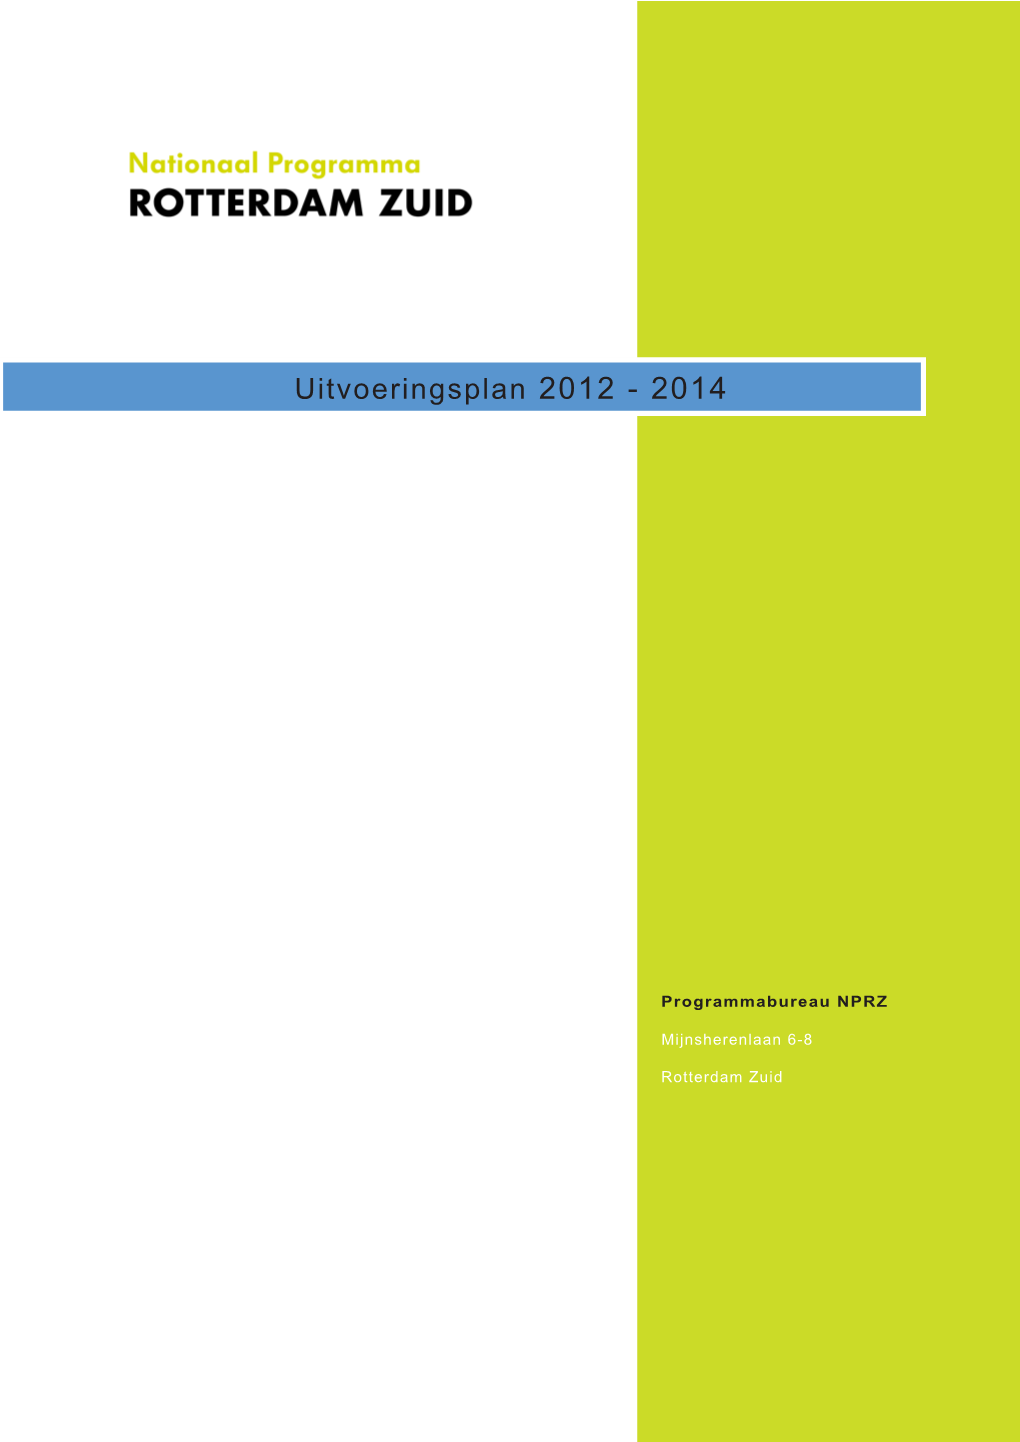 Uitvoeringsplan 2012 - 2014